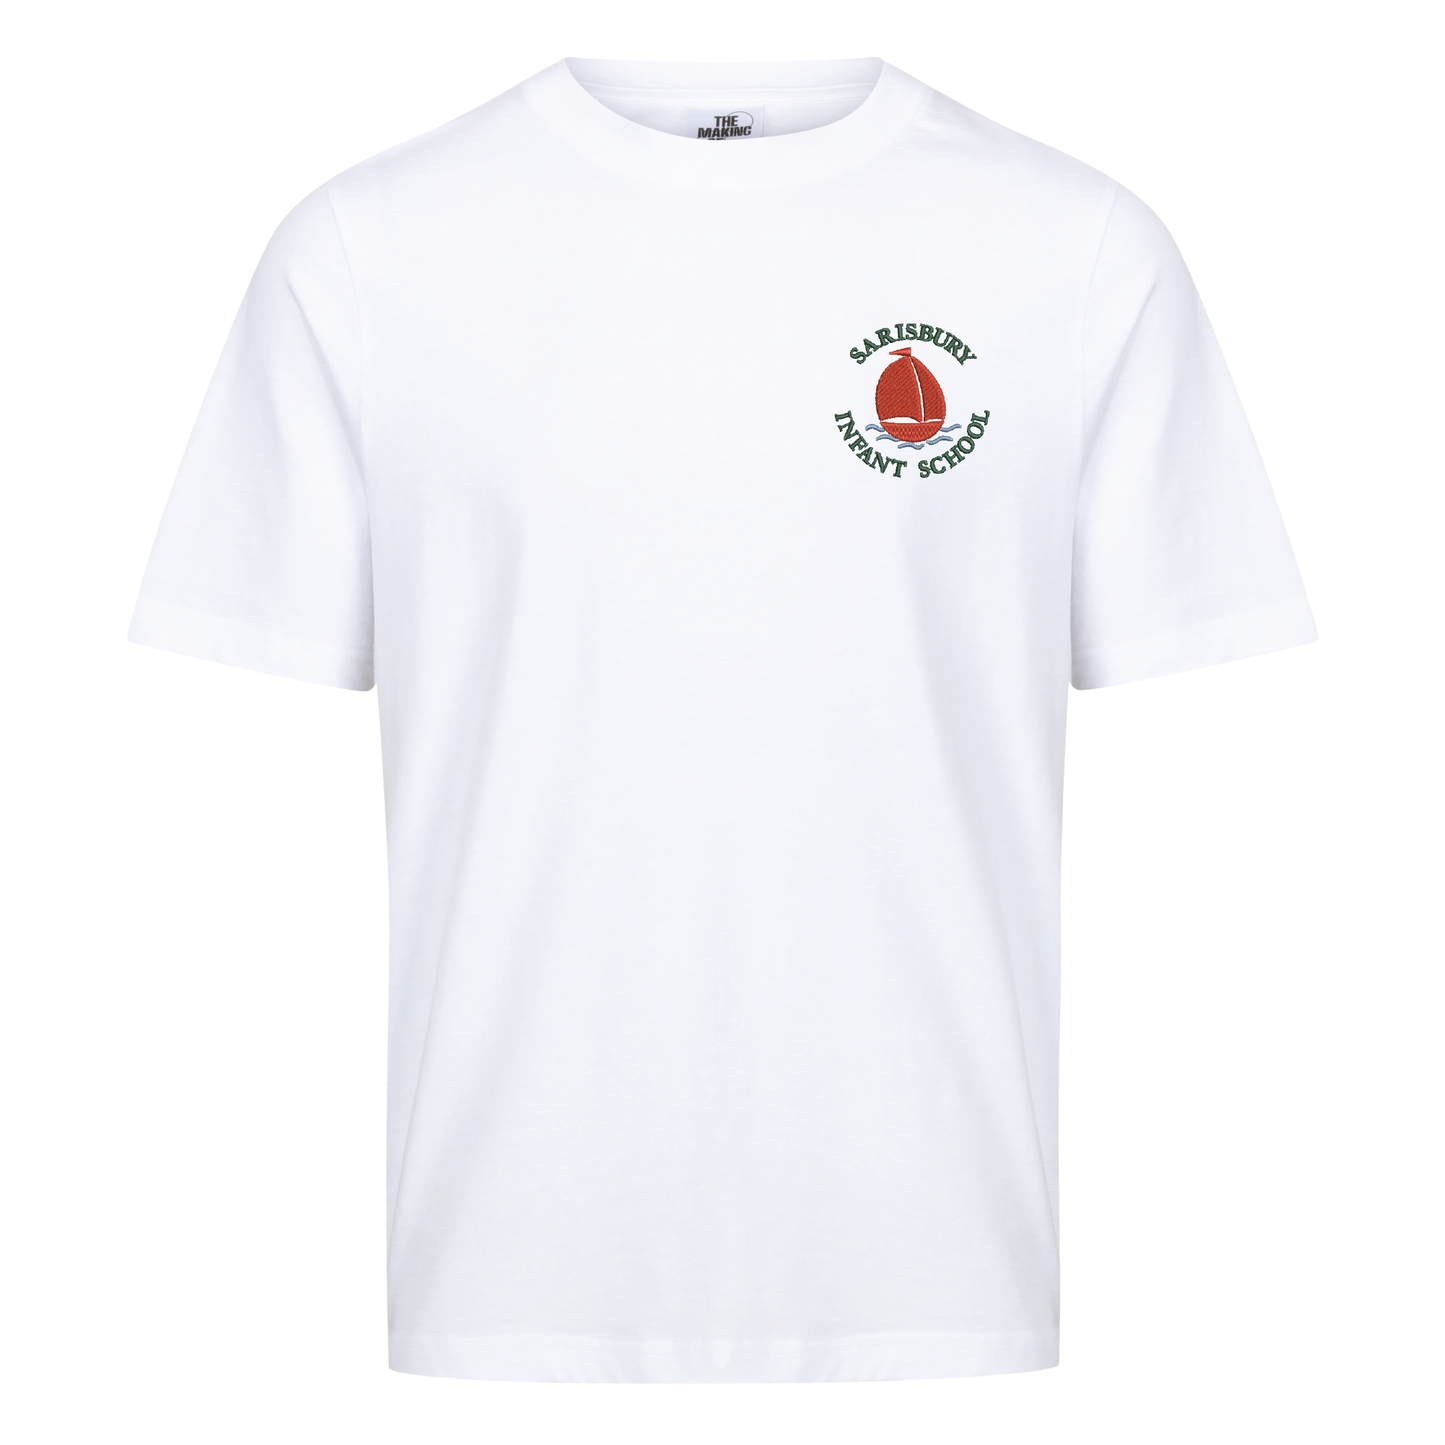 Sarisbury Infant School - Unisex Cotton T-Shirt